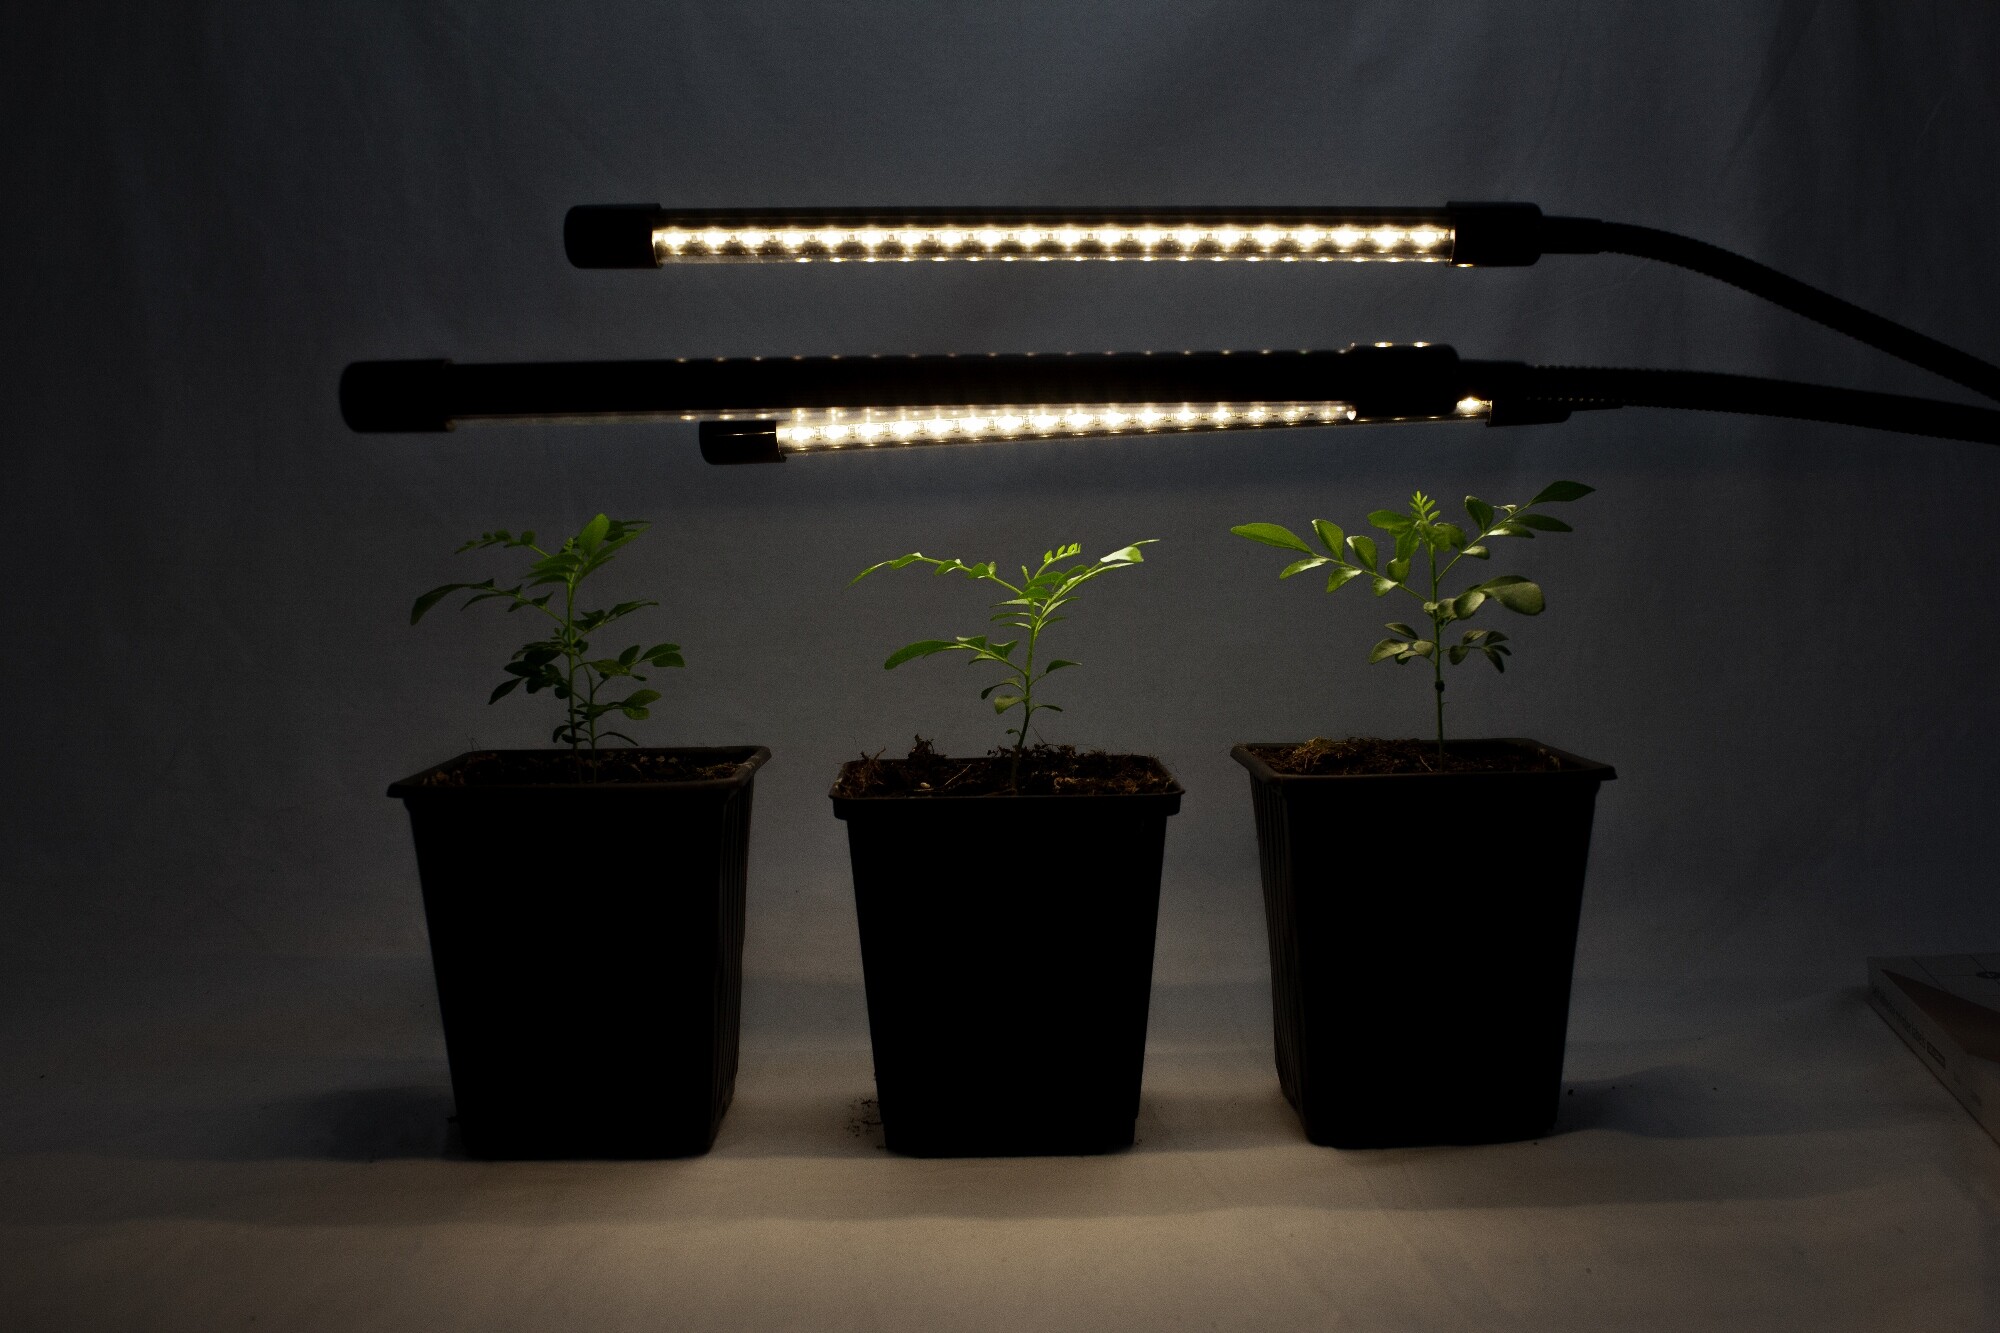 Lampe de Plante, Lampe de Croissance pour Plantes LED Plante Lampe  Horticole Parfait pour Plantes Intérieur （